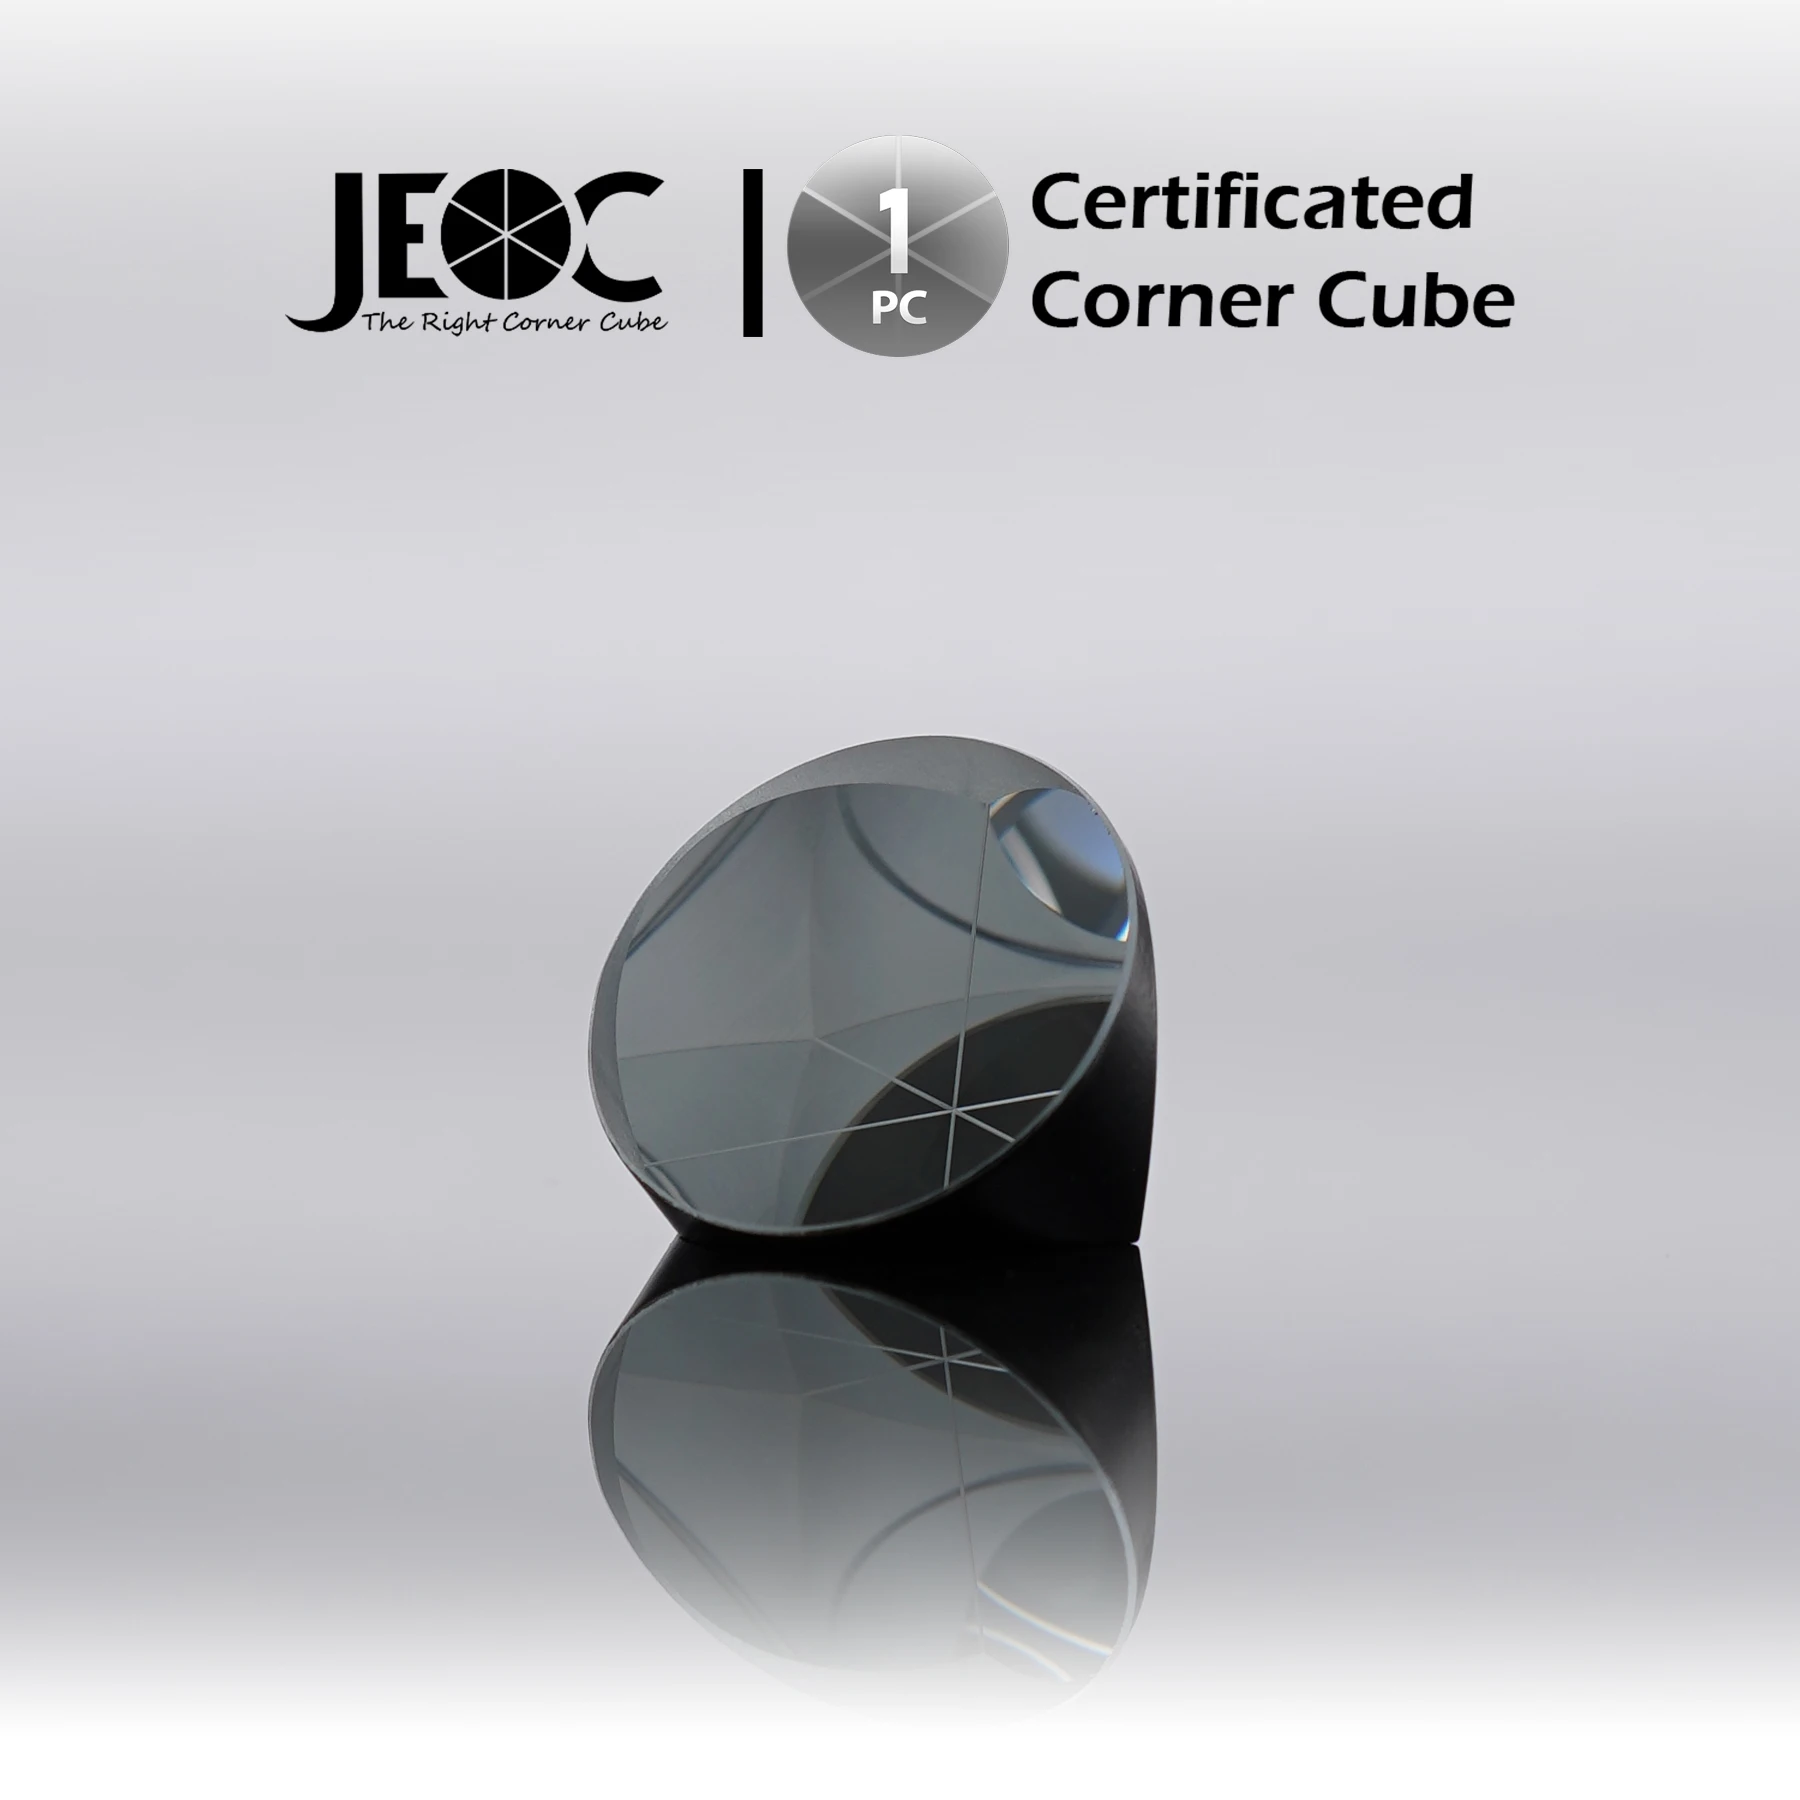 Угловой куб, сертифицированный JEOC, диаметр 25,4 мм (1 